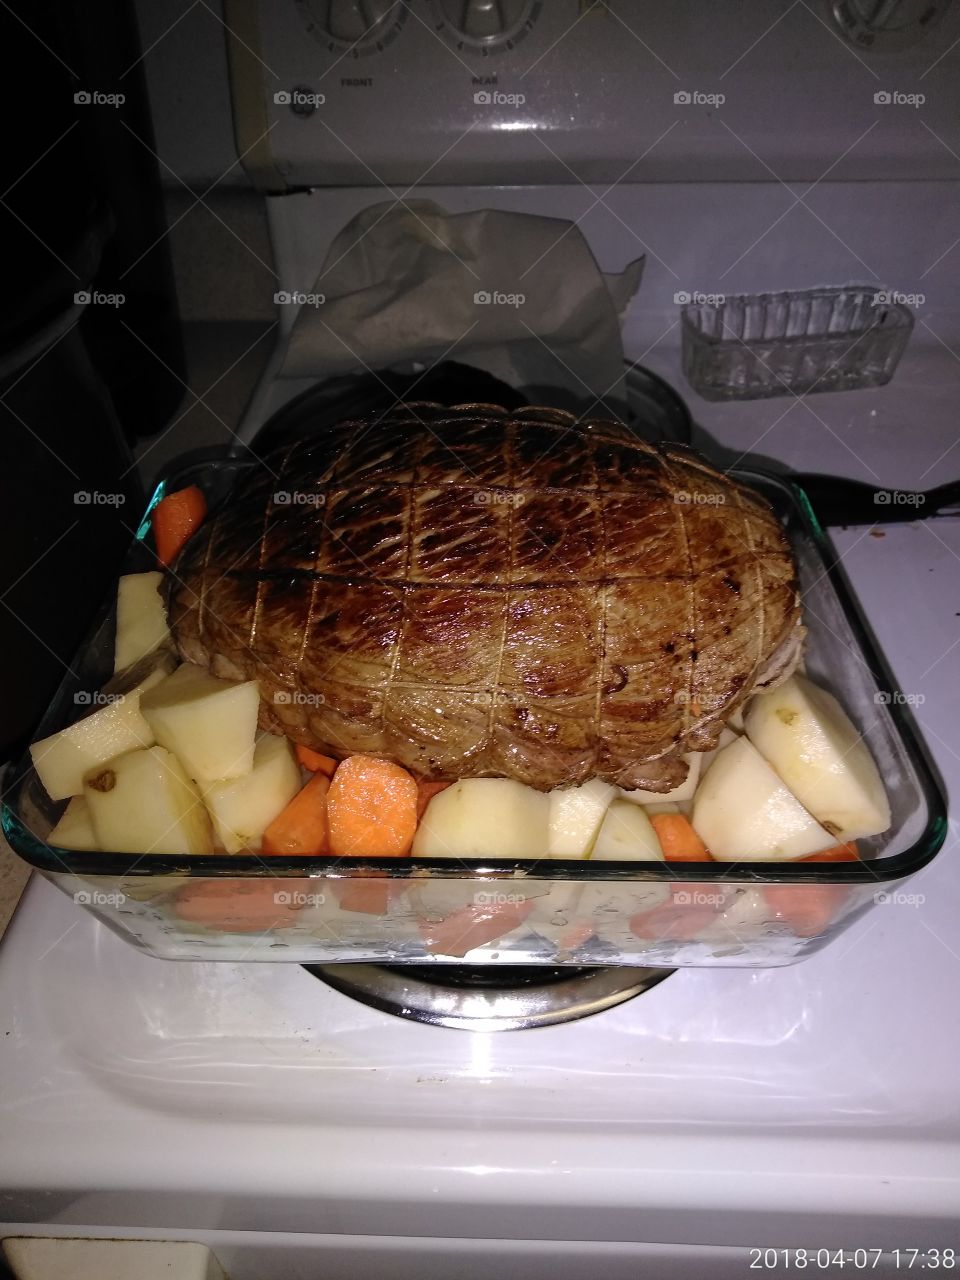 roast for dinner